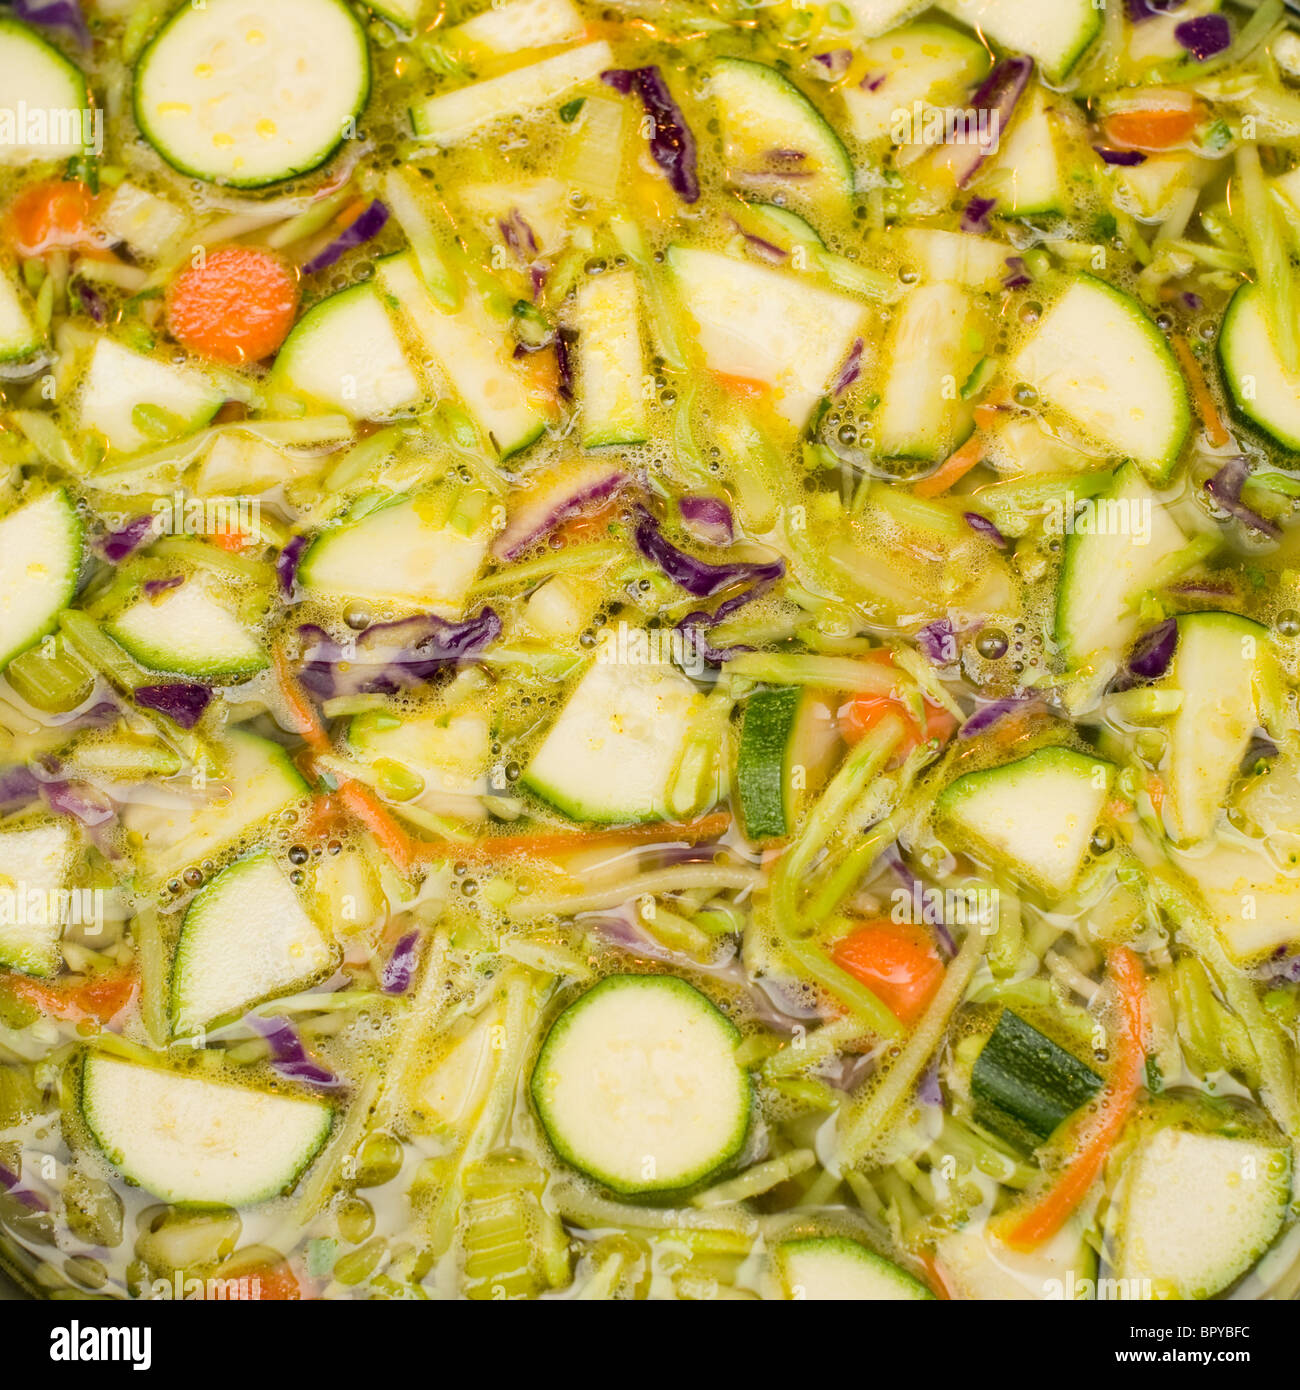 Le verdure per la cottura in brodo di pollo. Uno dei passaggi nel fare in casa la zuppa di pollo. Foto Stock